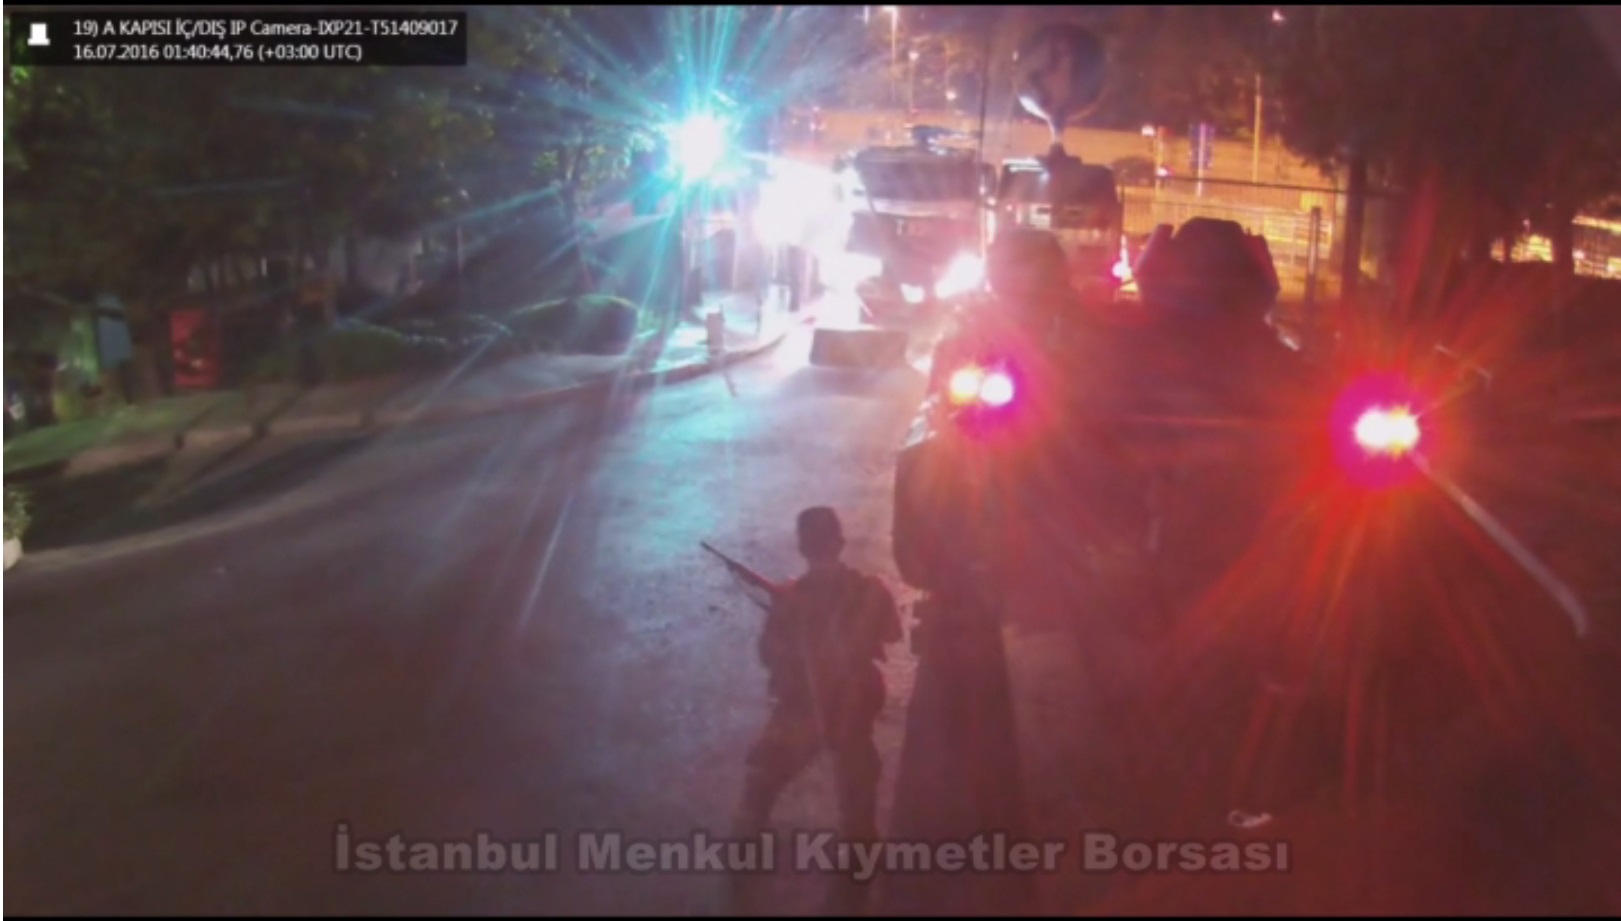 الجنود الانقلابيون يطلقون النار على سيارات التدخل الاجتماعي متخذين سيارة مدرّعة كدرع لهم.